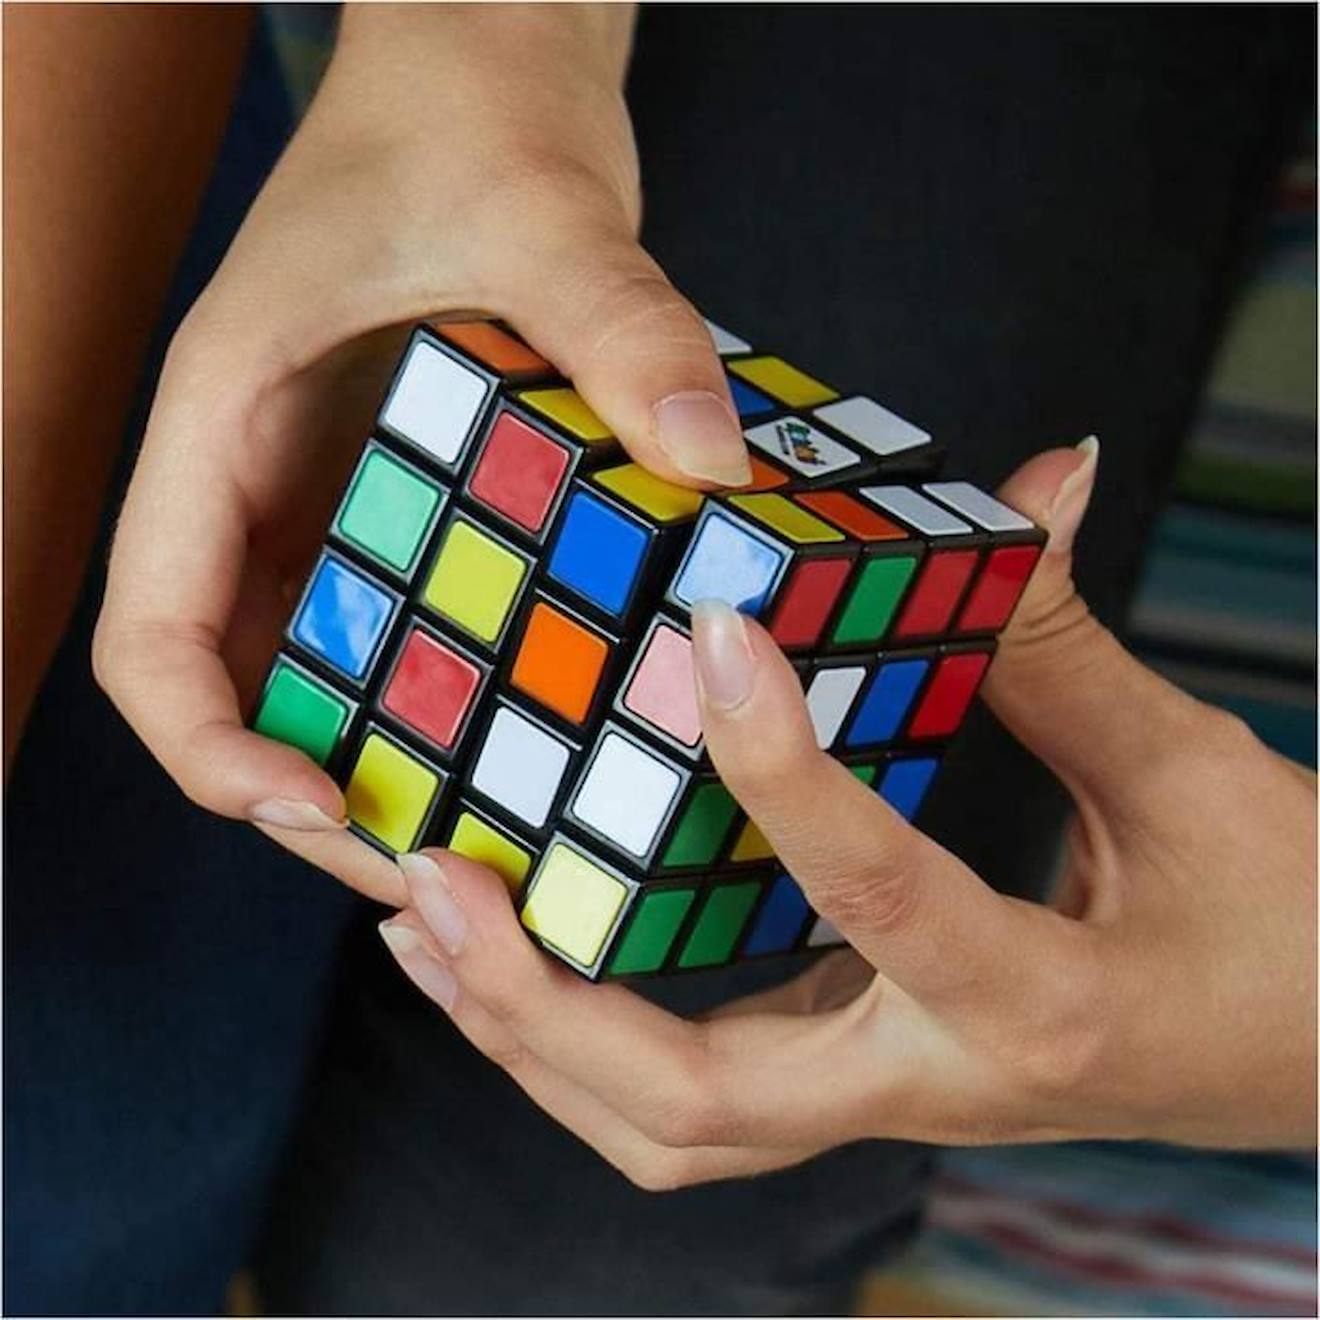 Jeu casse-tête Rubik's Cube 4x4 - RUBIK'S - Multicolore - Pour enfant de 8  ans et plus bleu - Rubik's